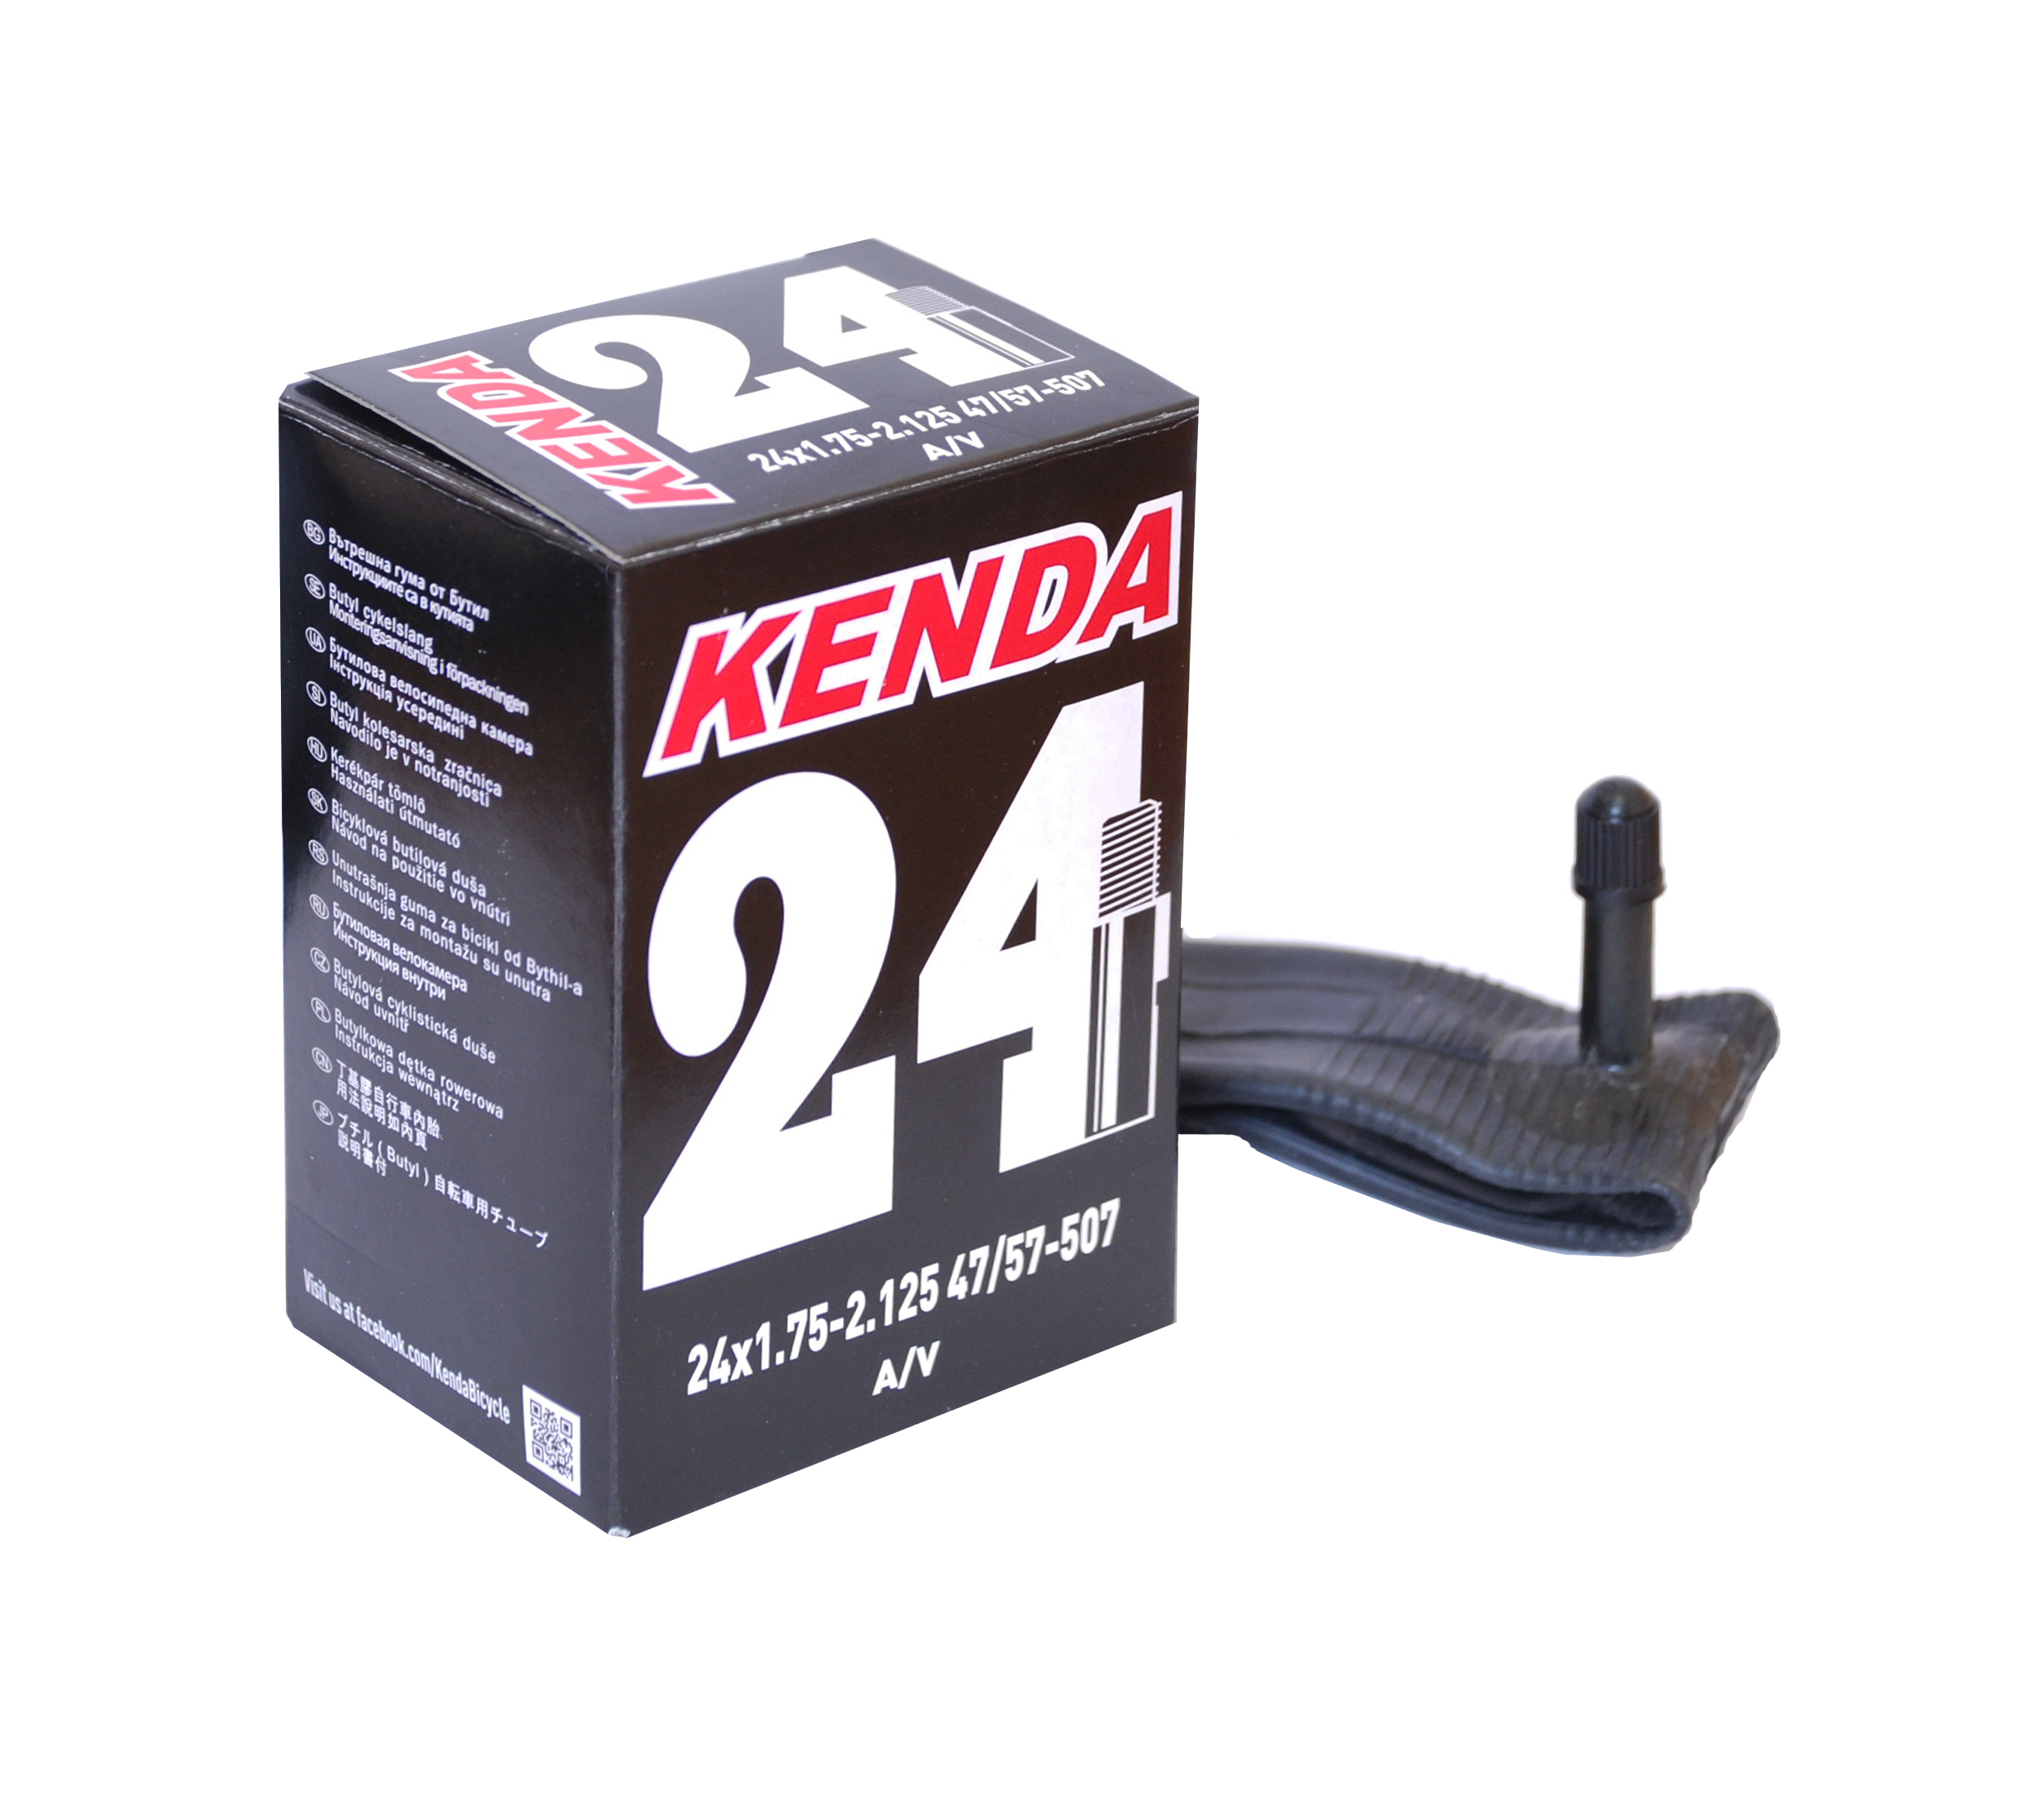 Камера 24" авто 48 мм 1,75-2,125 (47/57-507). KENDA